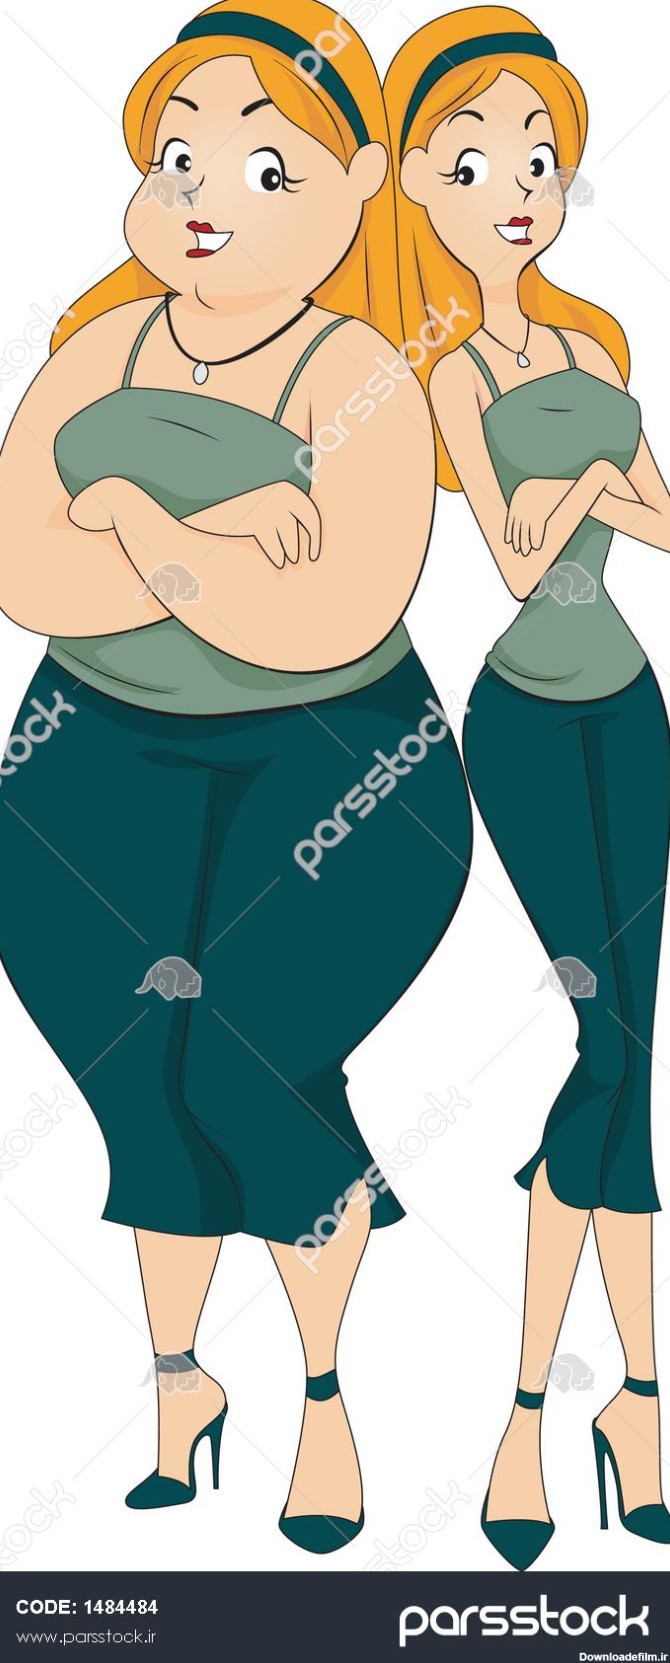 دختر چاق و نازک قبل و بعد وکتور 1484484